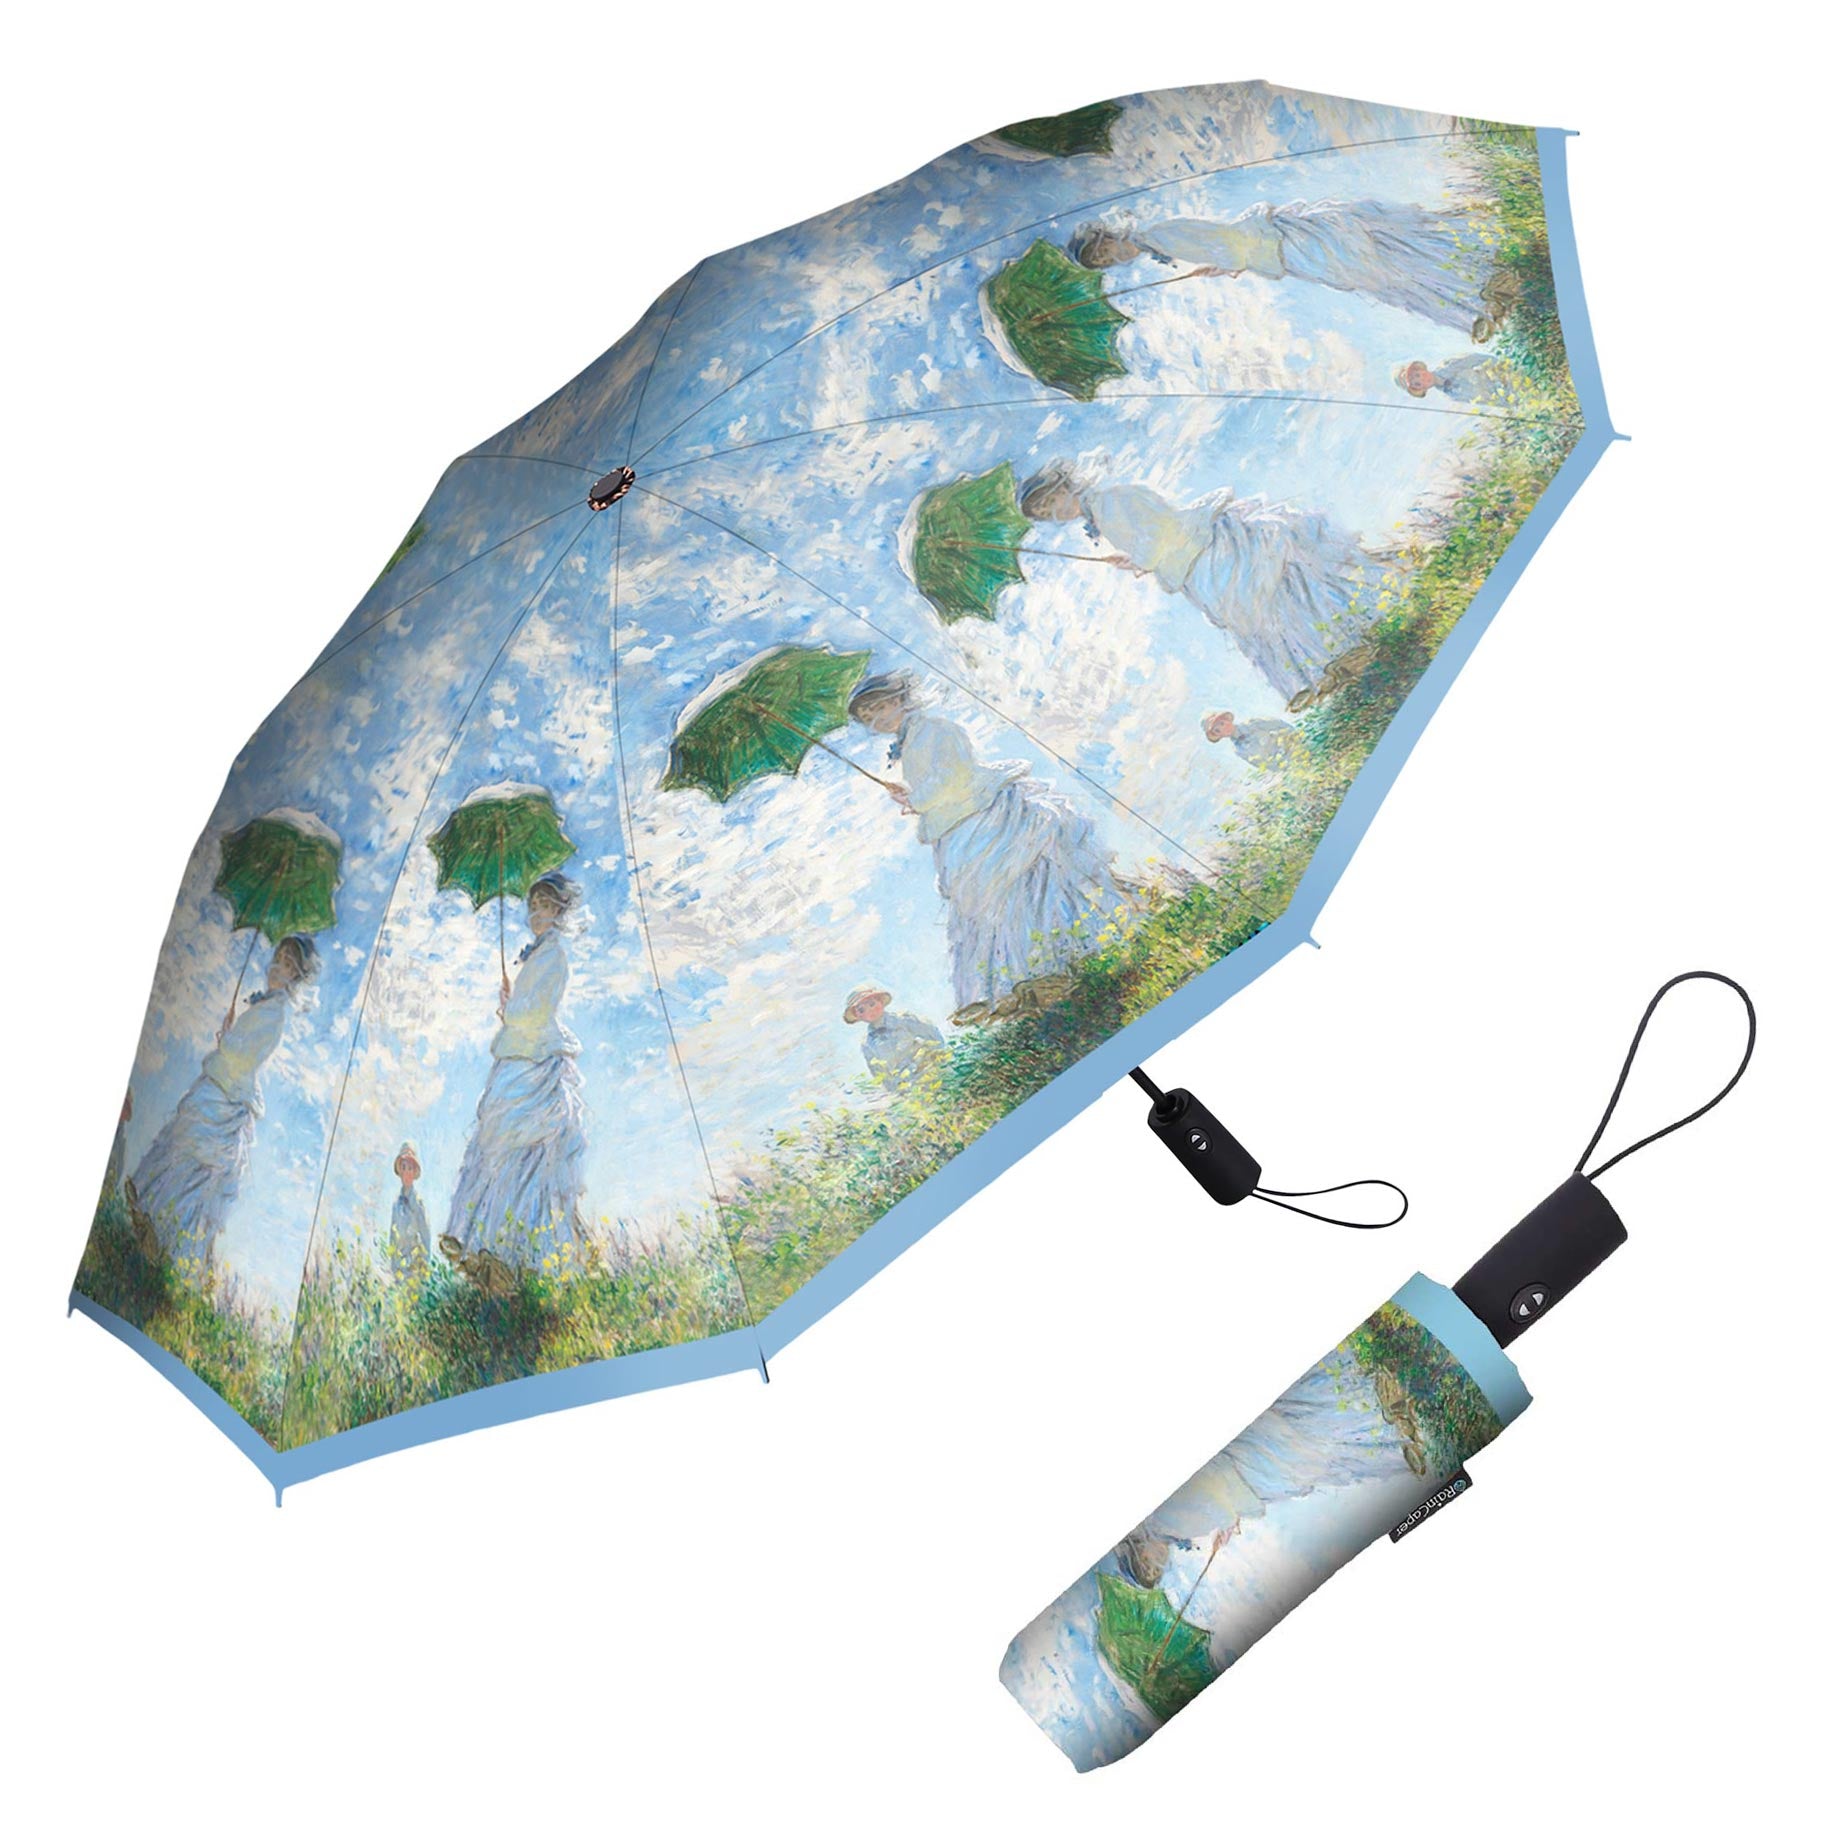 Monet Parasol Rain Umbrella